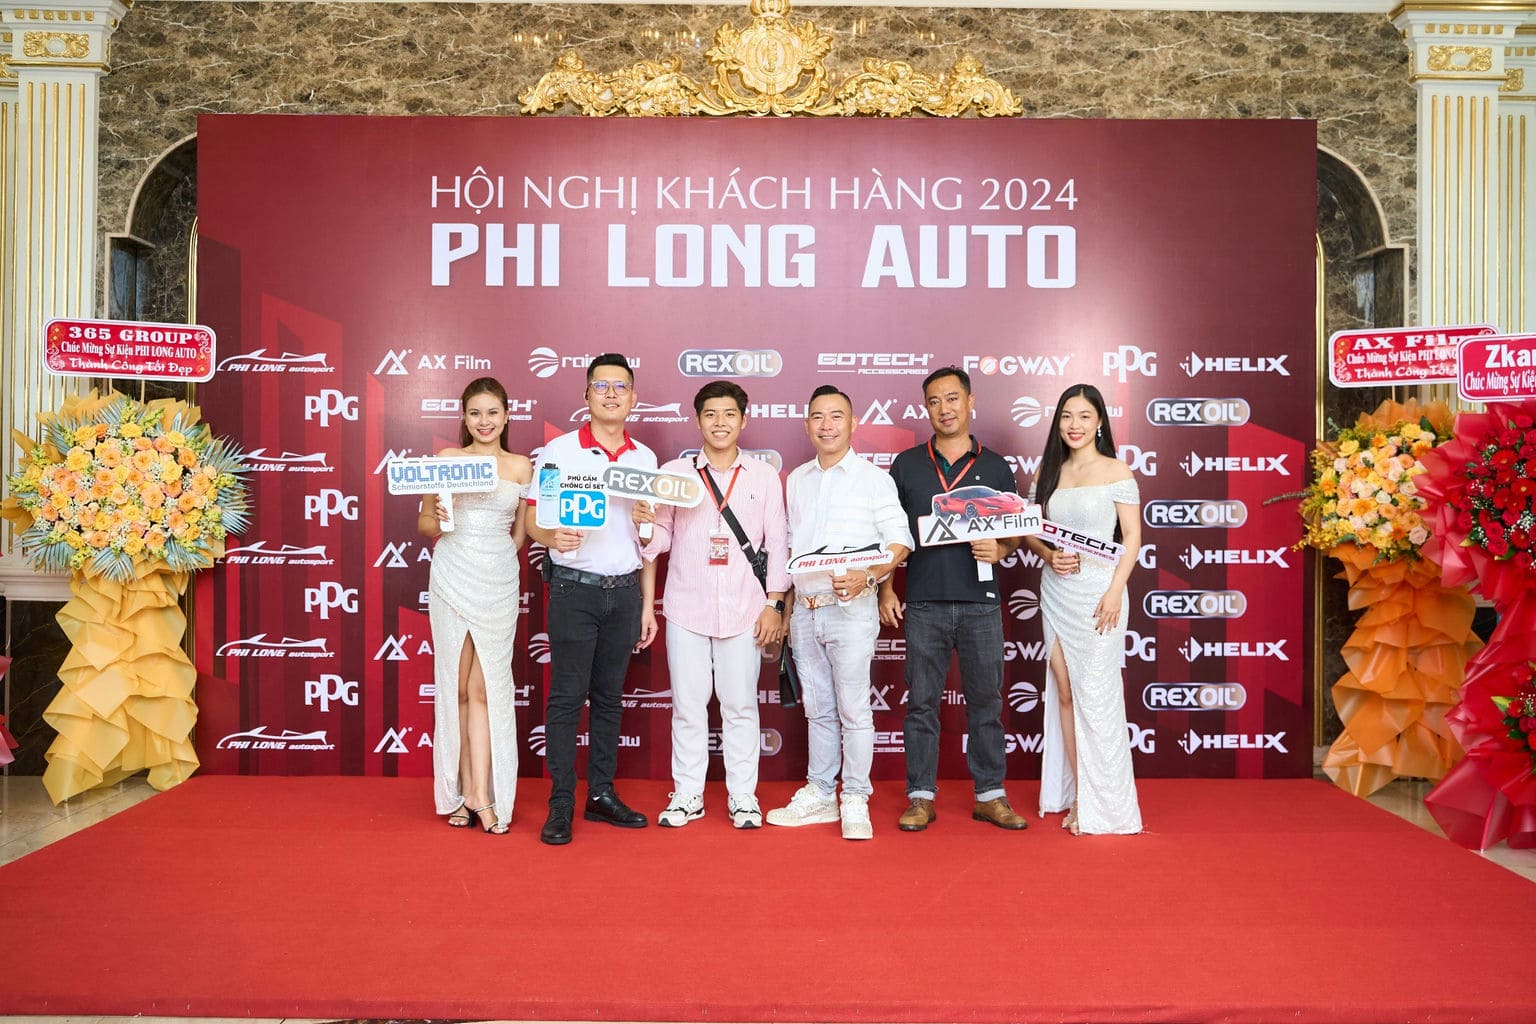 HOI NGHI KHACH HANG PHI LONG AUTO 2024 30 | Phi Long Auto